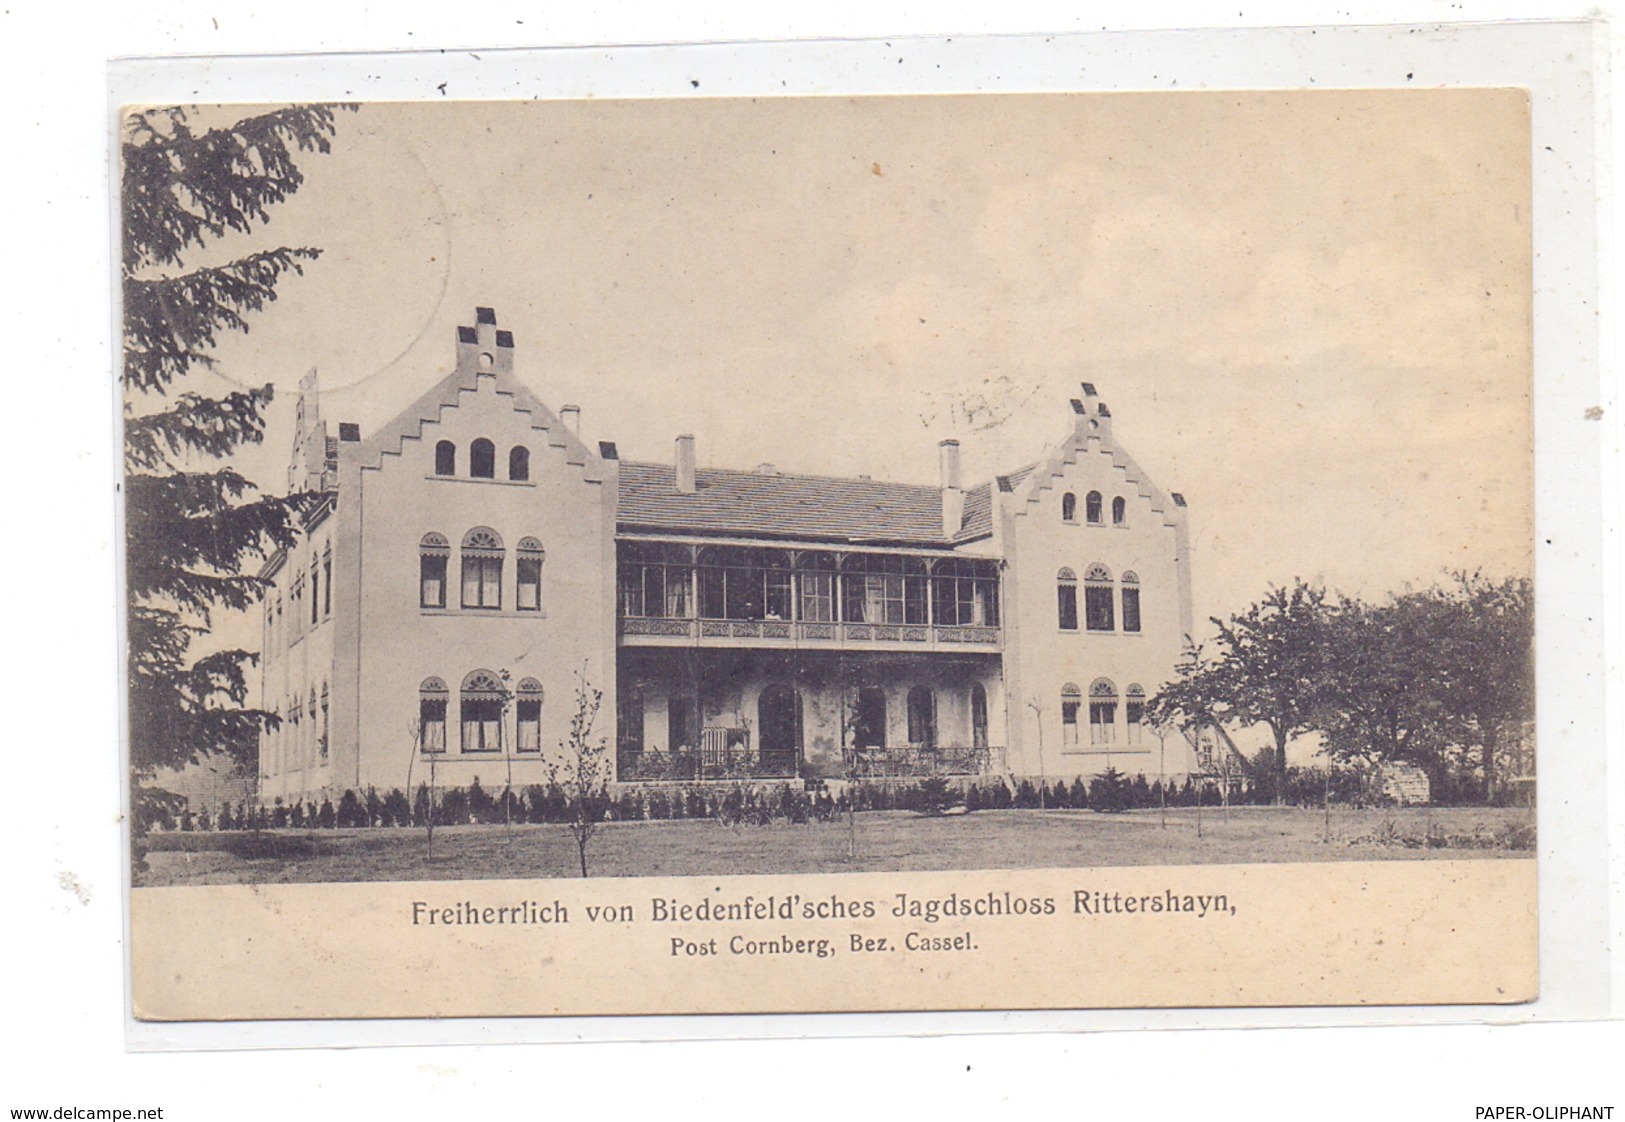 6441 CORNBERG - ROCKENSÜSS, Jagdschloss Rittershayn, 1907 - Bad Hersfeld